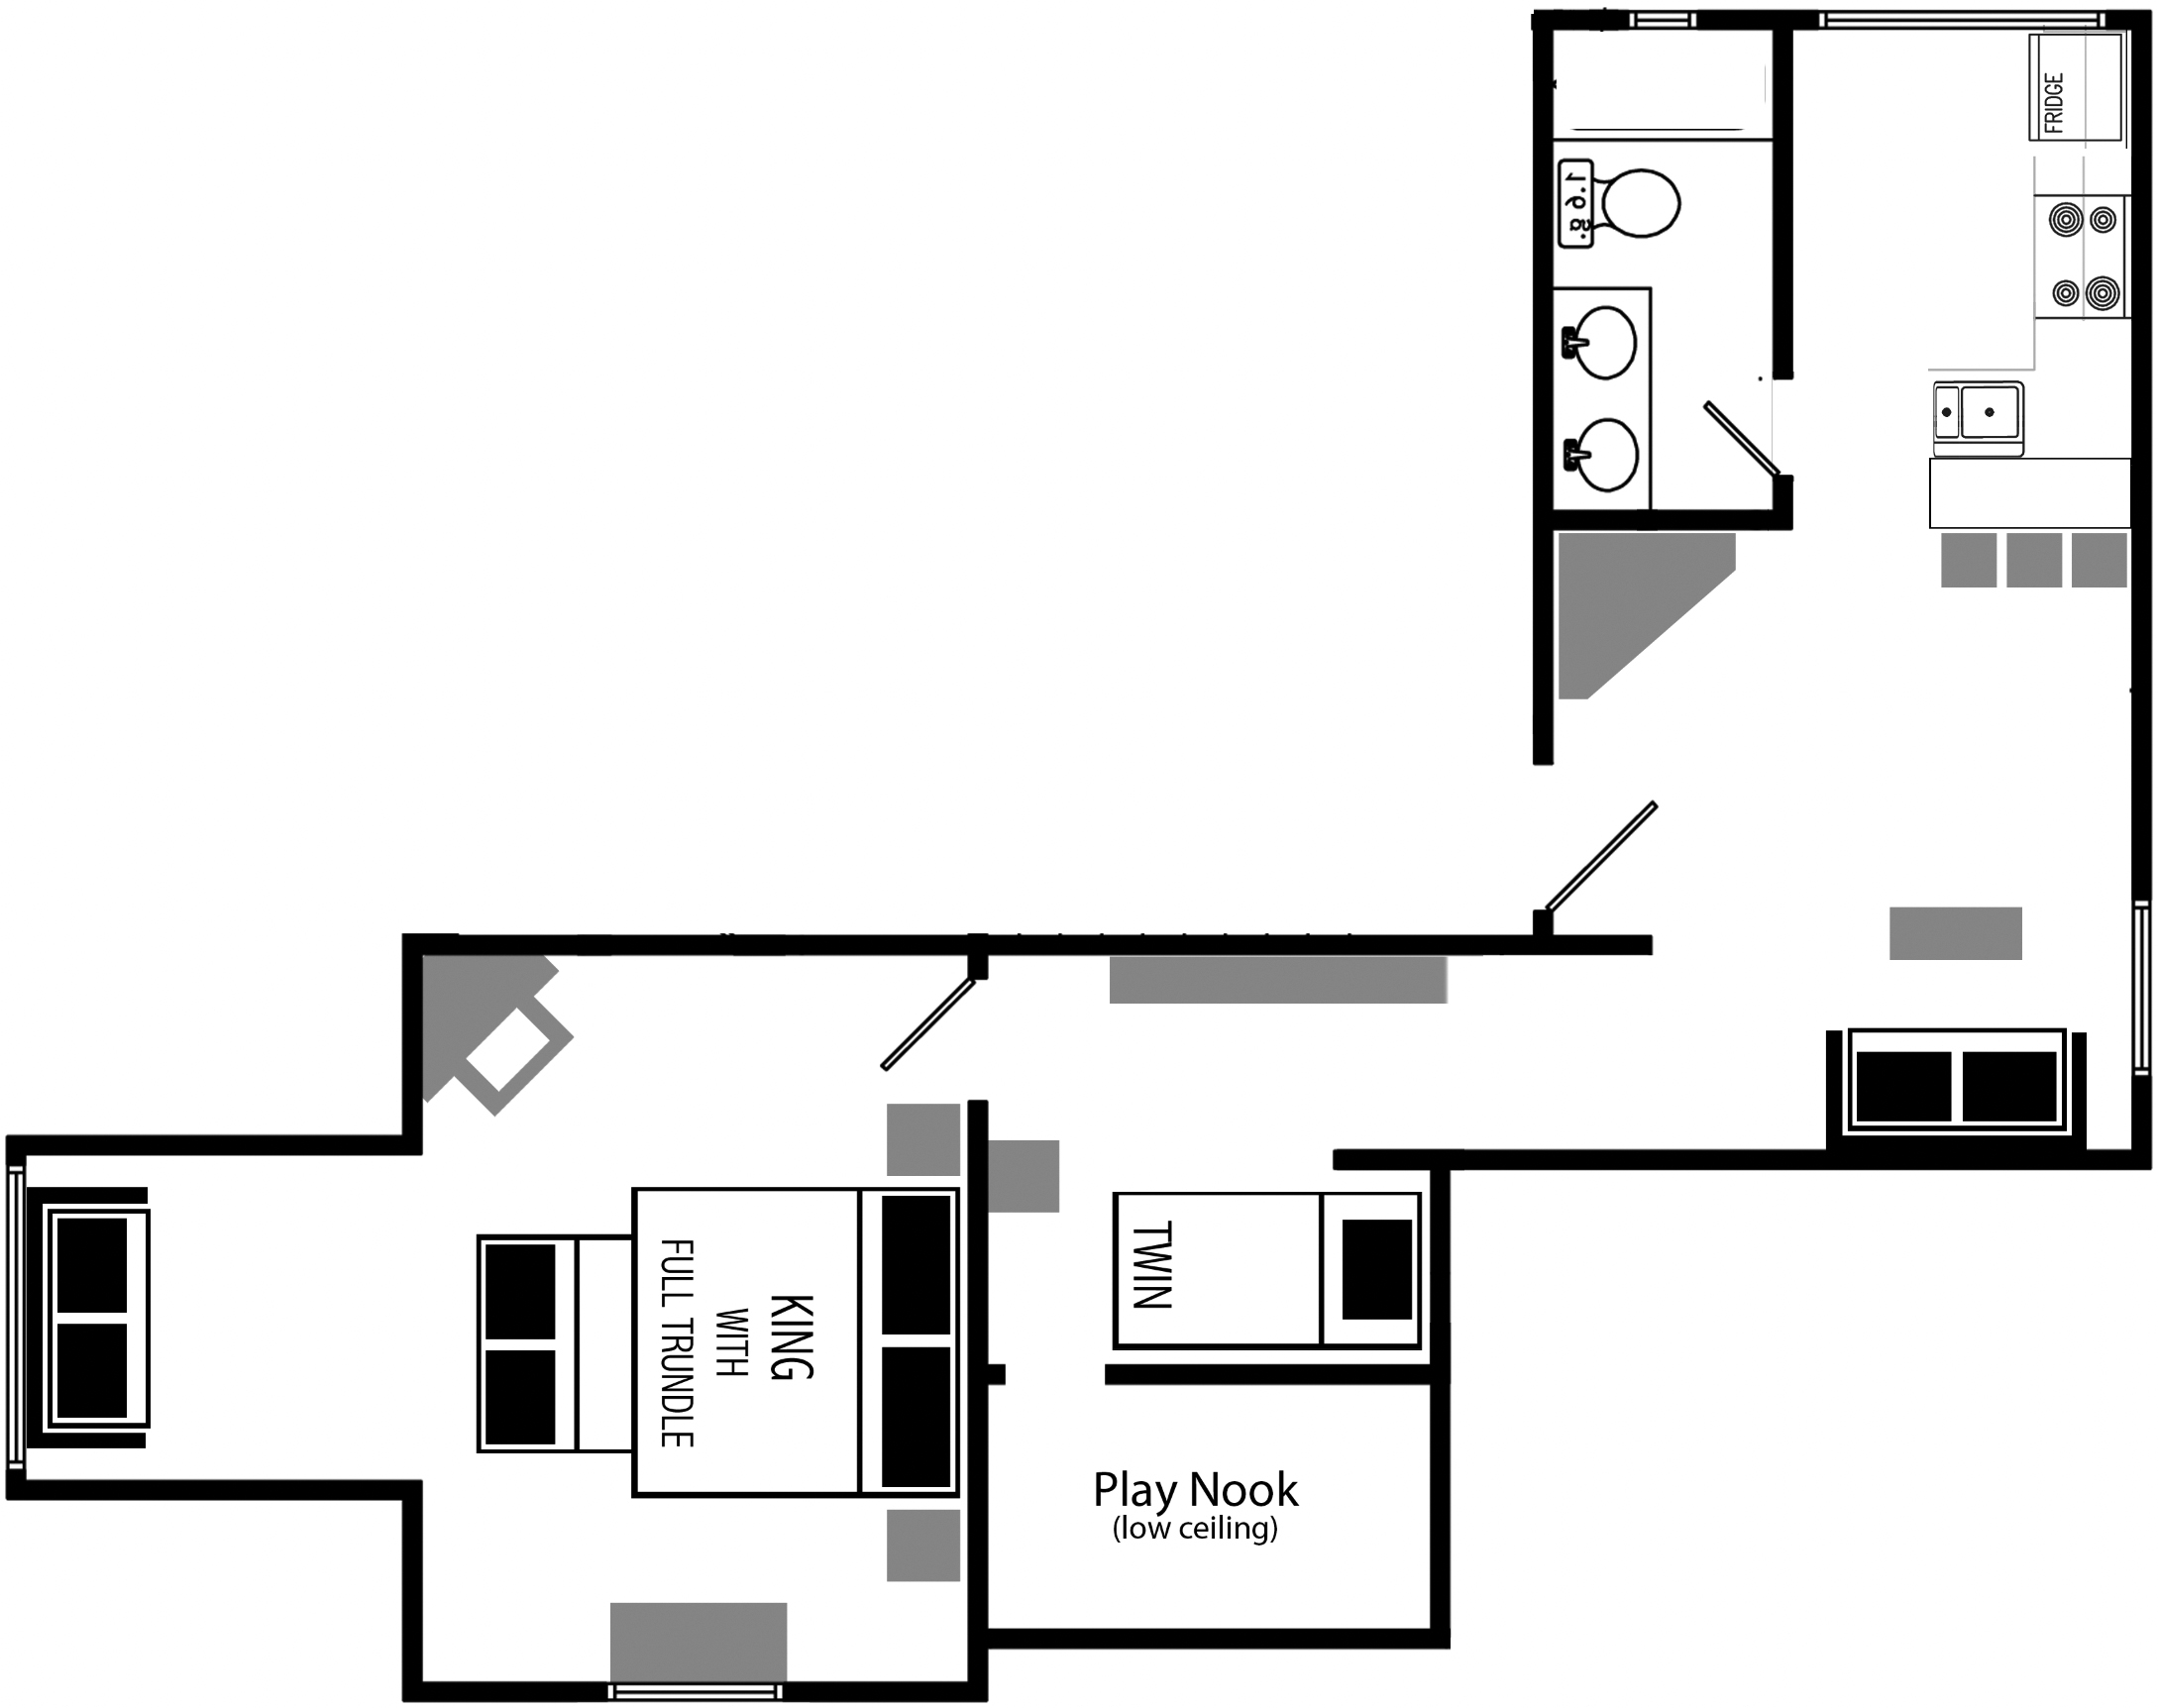 1-bedroom Vacation Rental Floor Plan